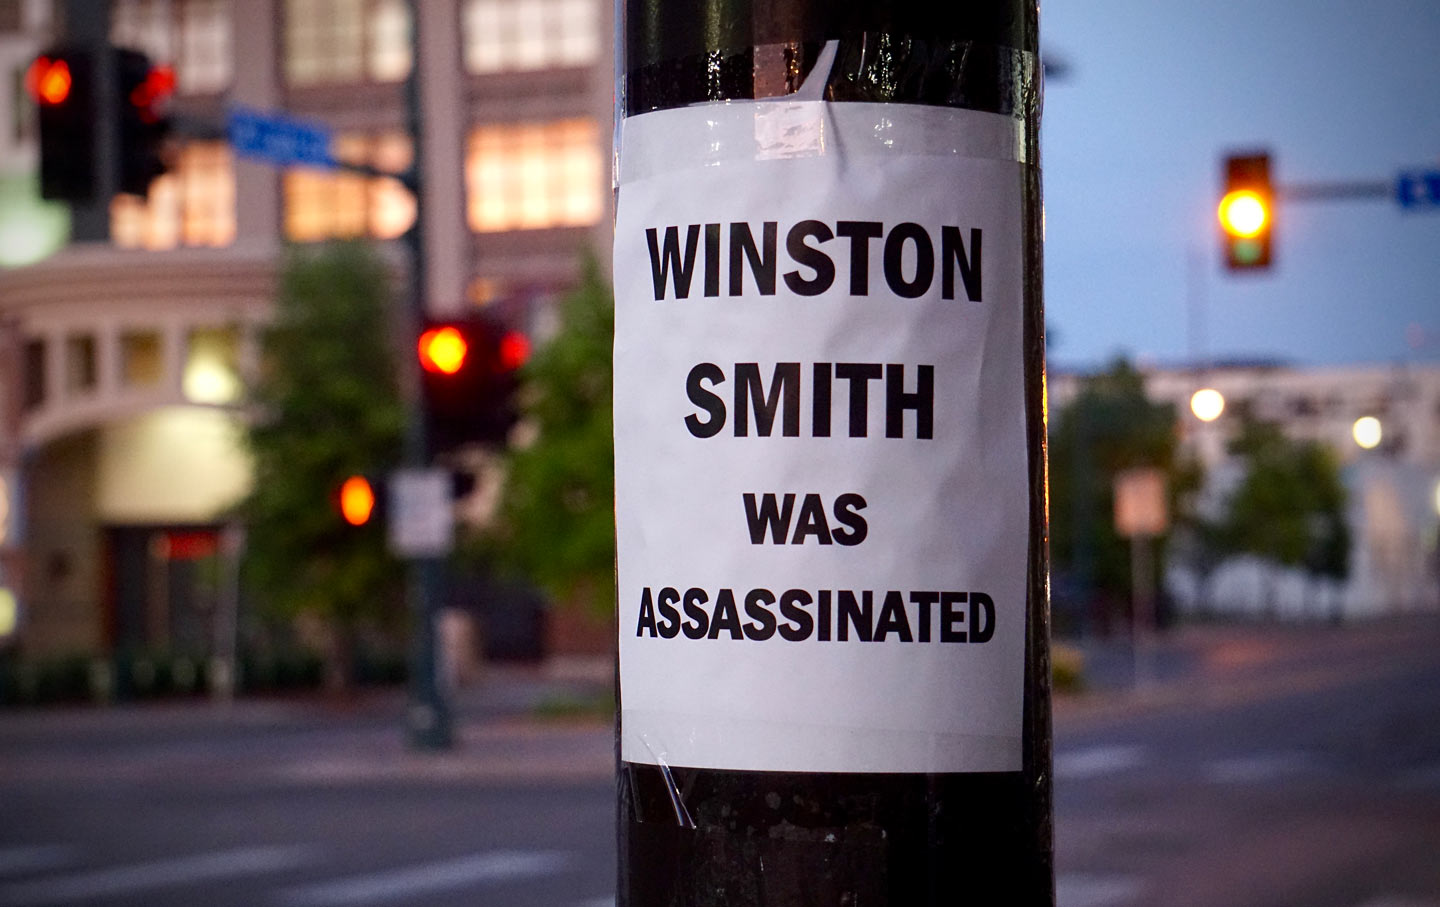 Winston Smith